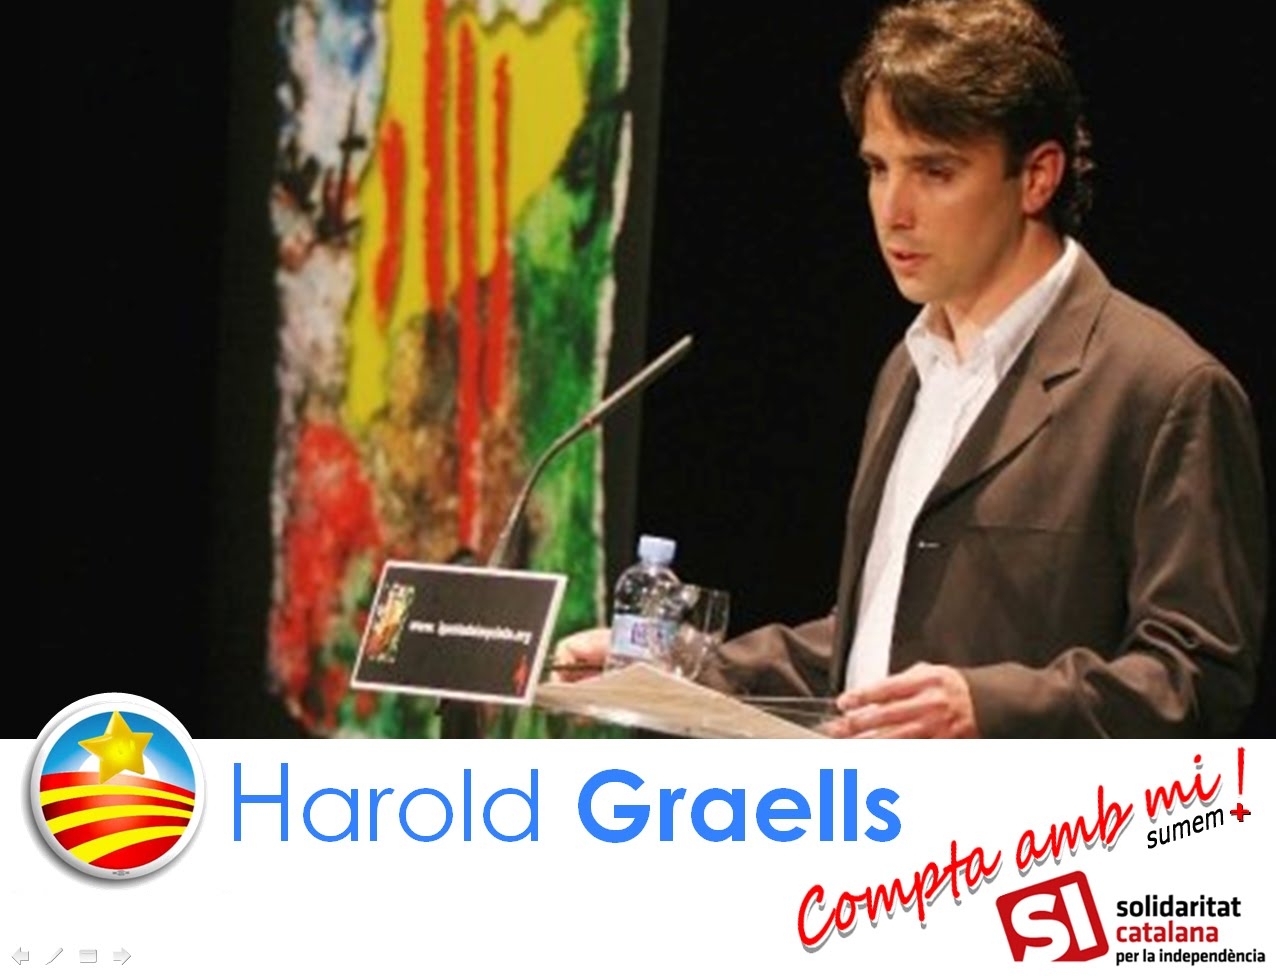 La candidatura de Harold Graells